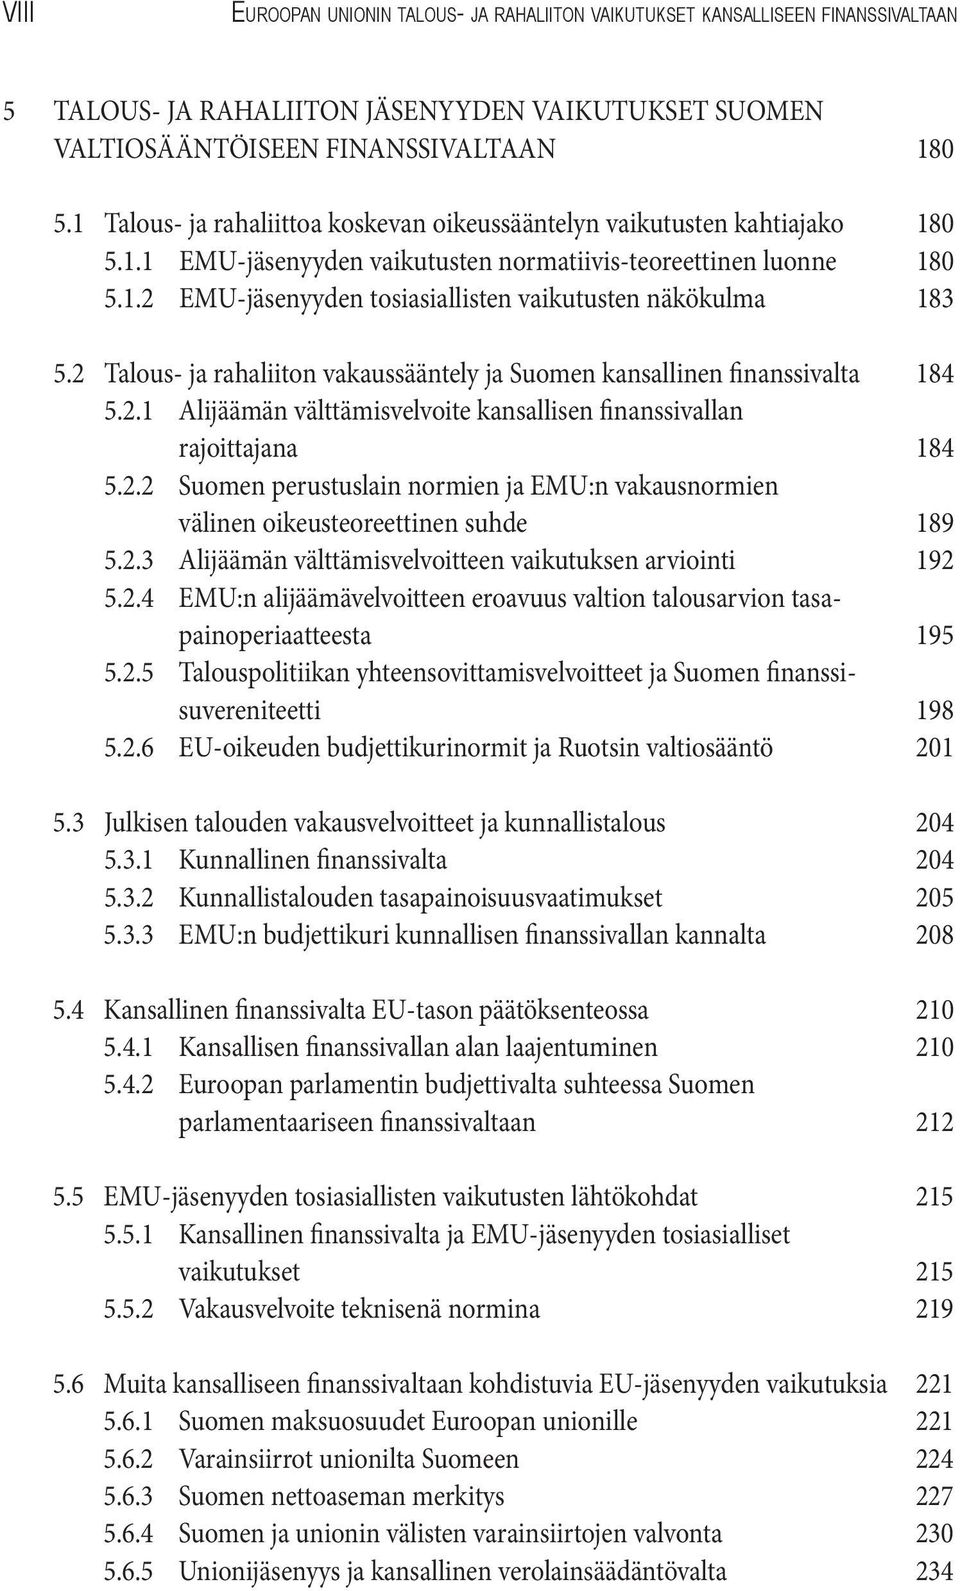 2 Talous- ja rahaliiton vakaussääntely ja Suomen kansallinen finanssivalta 184 5.2.1 Alijäämän välttämisvelvoite kansallisen finanssivallan rajoittajana 184 5.2.2 Suomen perustuslain normien ja EMU:n vakausnormien välinen oikeusteoreettinen suhde 189 5.